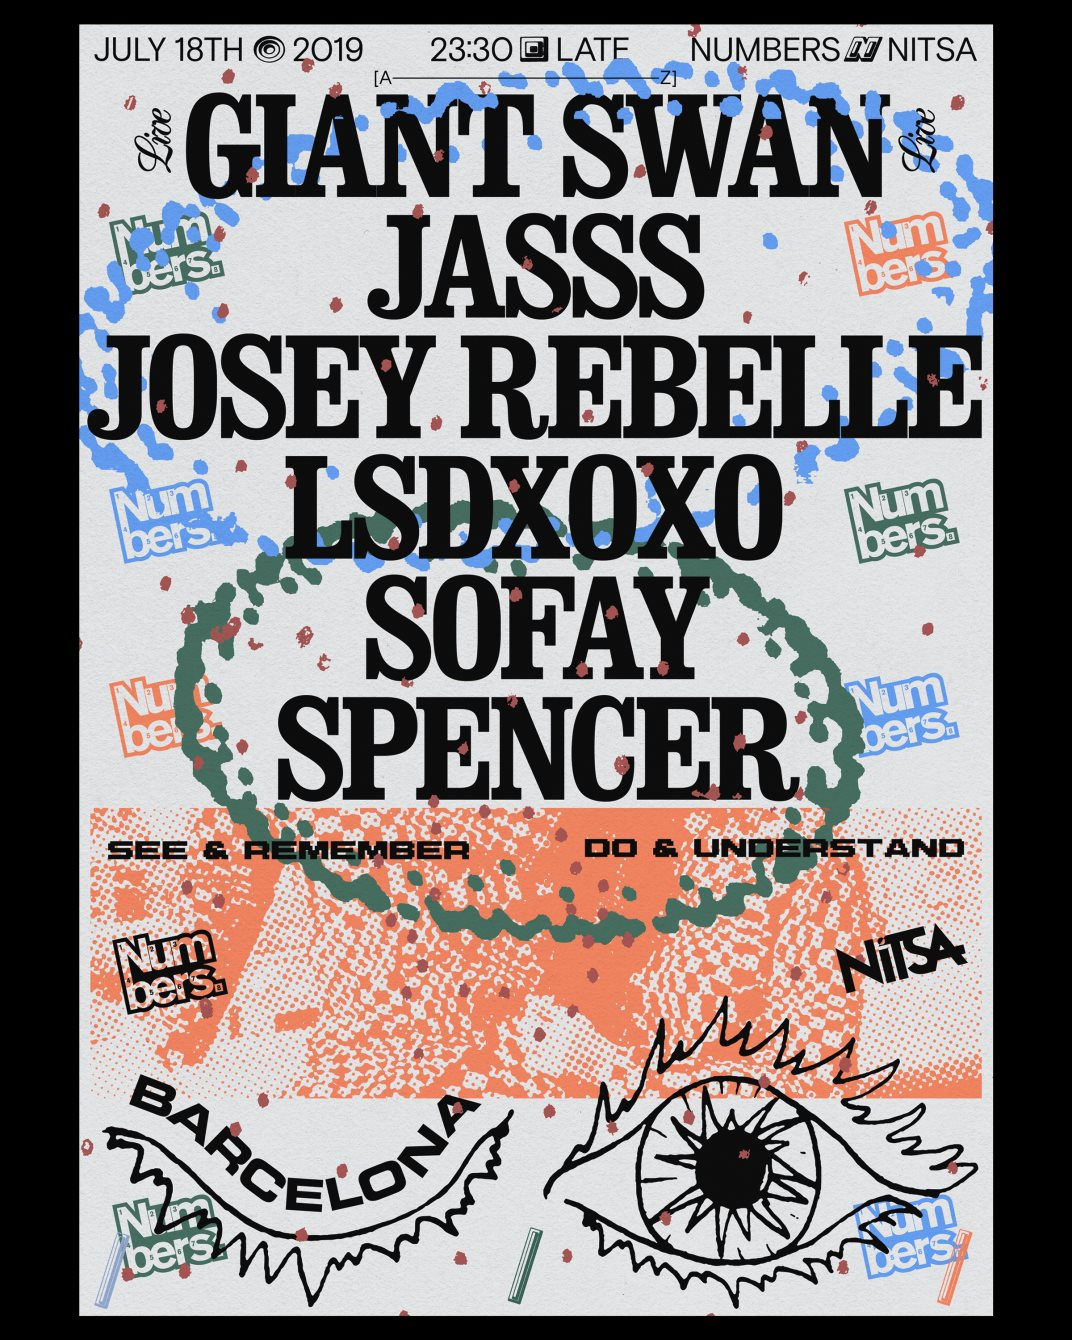 Versus 2019/ Numbers: Giant Swan live! · JASSS · Josey Rebelle · LSDXOXO · Sofay · Spencer - Flyer front